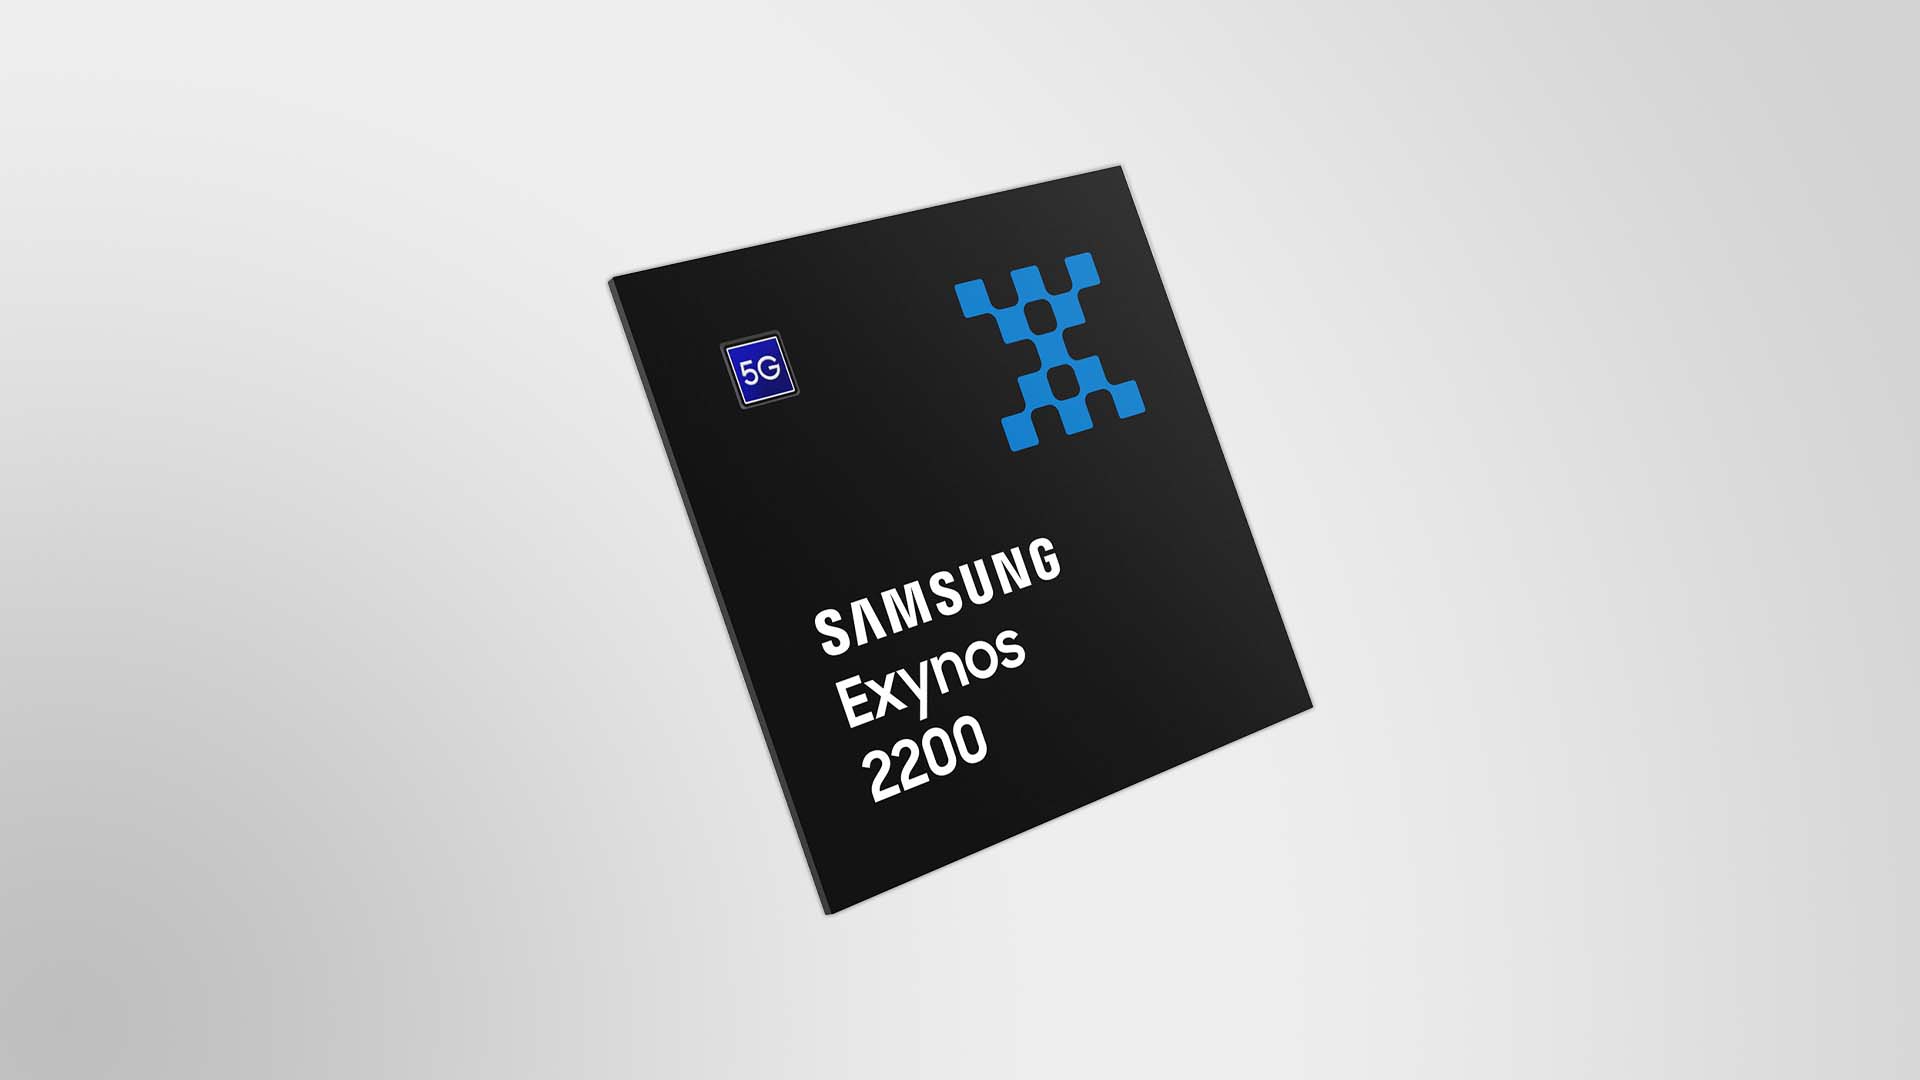 Samsung enthüllt Exynos 2200: Flaggschiff-Prozessor mit AMD-Grafik für Galaxy S22-Smartphones